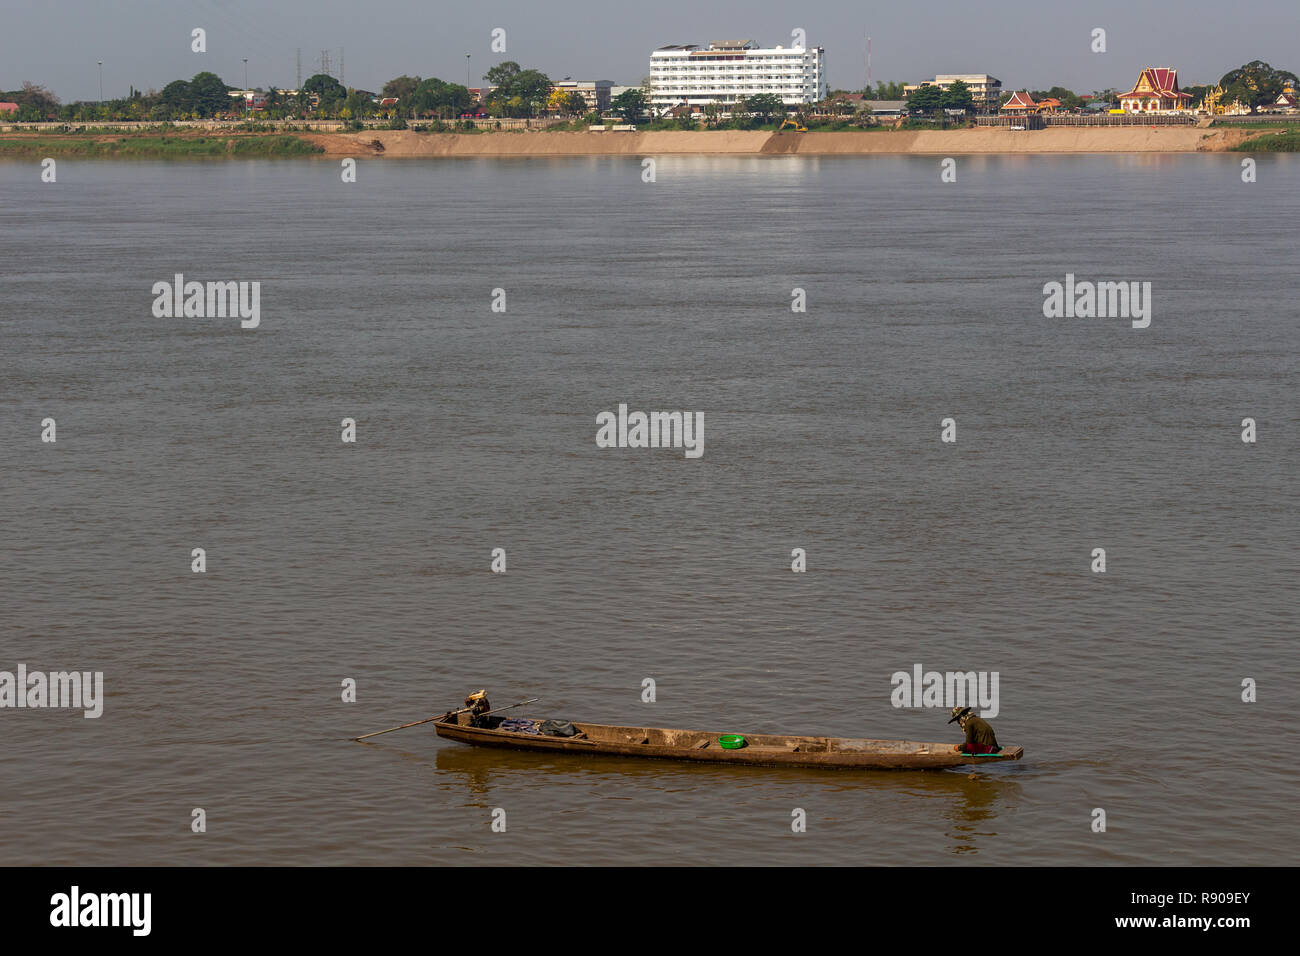 Thakhek, Laos - 19 Aprile 2018: uomo seduto sulla sua barca da pesca nel fiume Mekong al sorgere del sole con la Tailandia in background Foto Stock